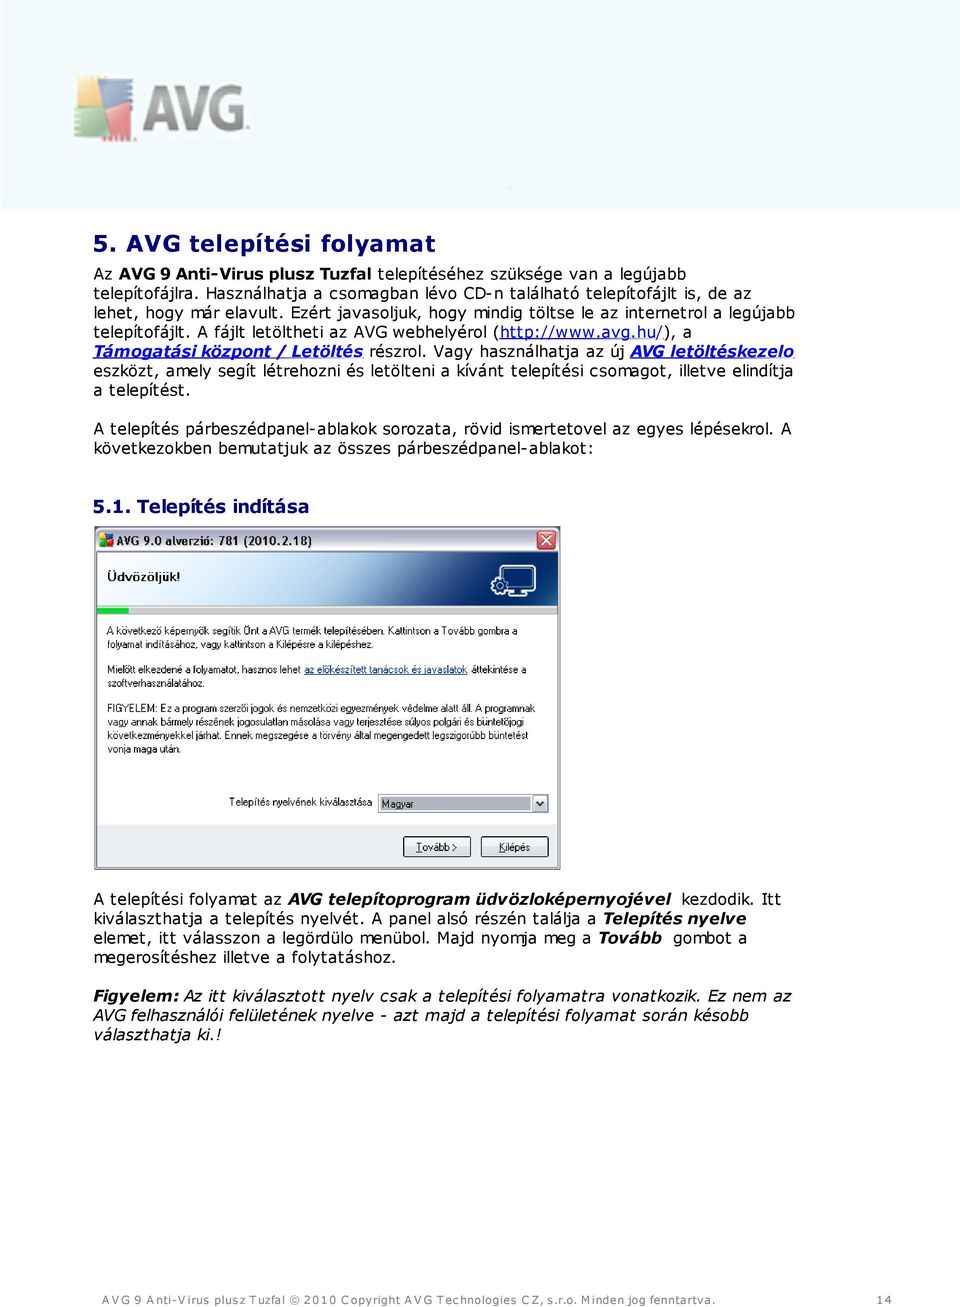 A fájlt letöltheti az AVG webhelyérol (http://www.avg.hu/), a Támogatási központ / Letöltés részrol.